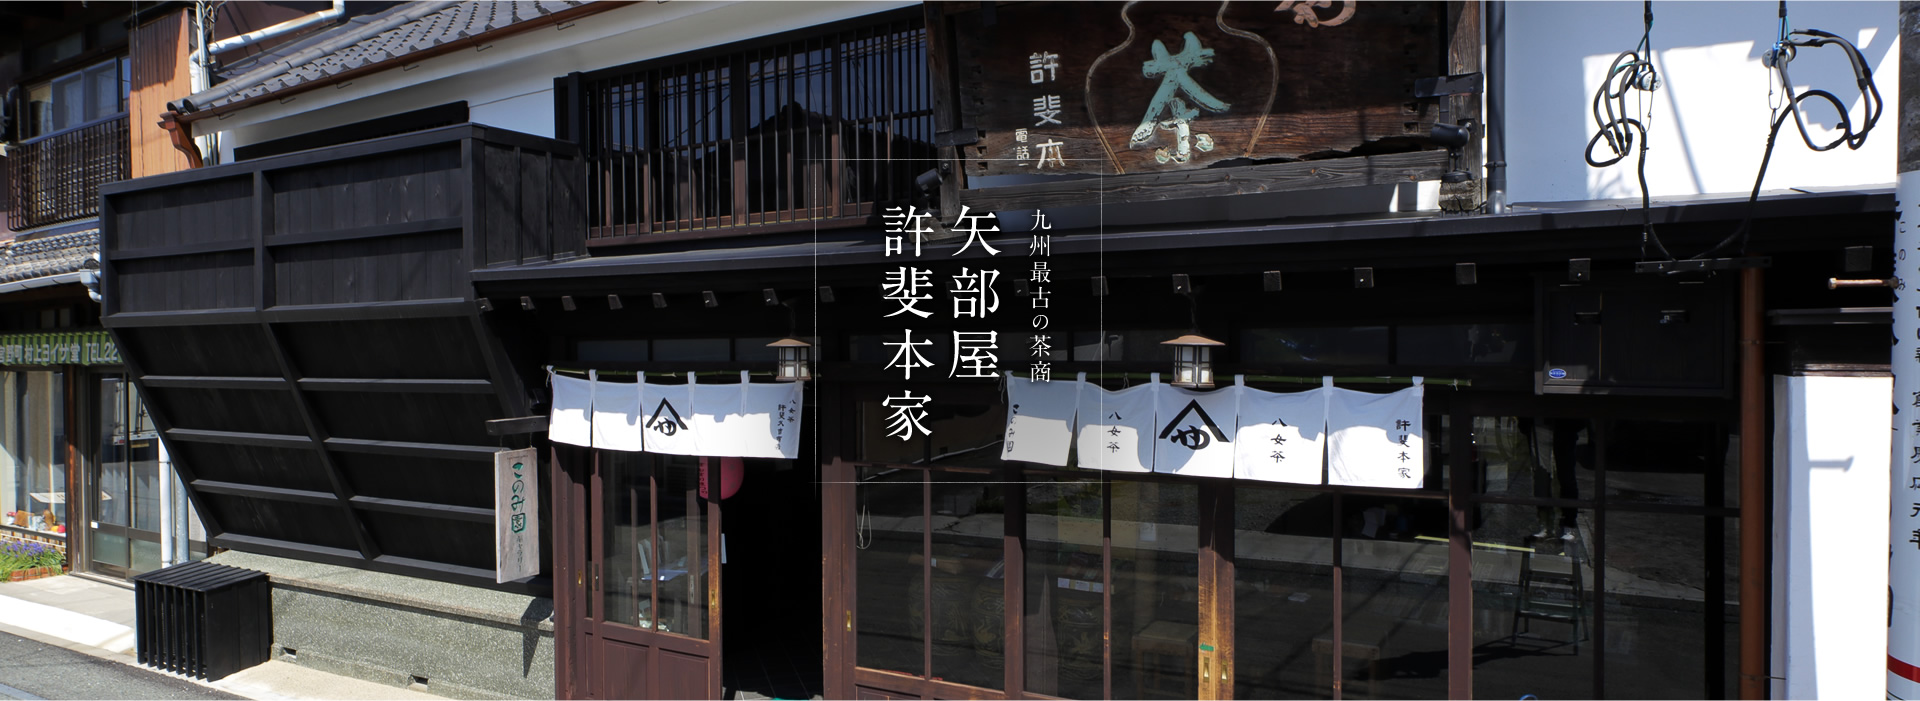 九州最古の茶商 矢部屋 許斐本家